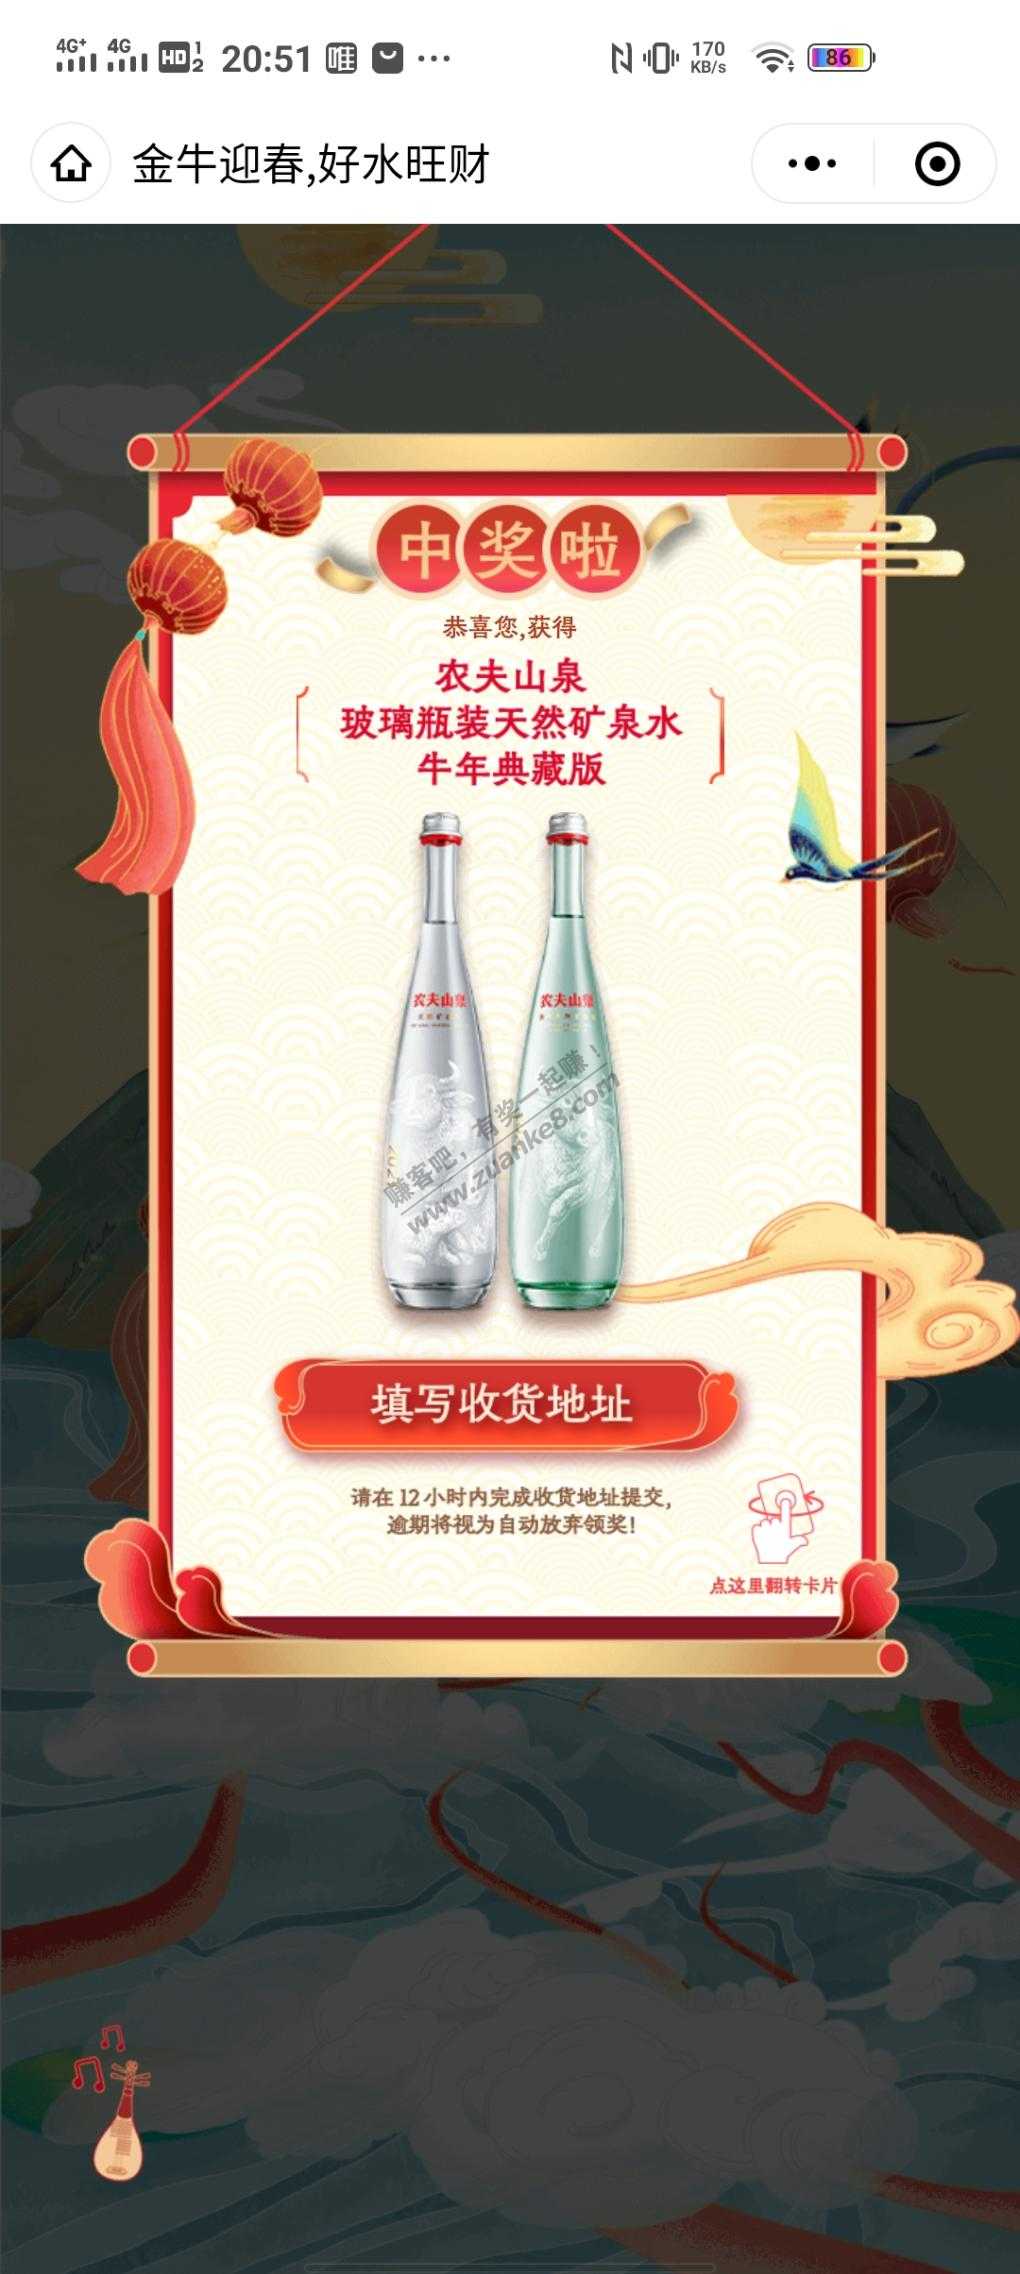 022水到一瓶农夫山泉-惠小助(52huixz.com)